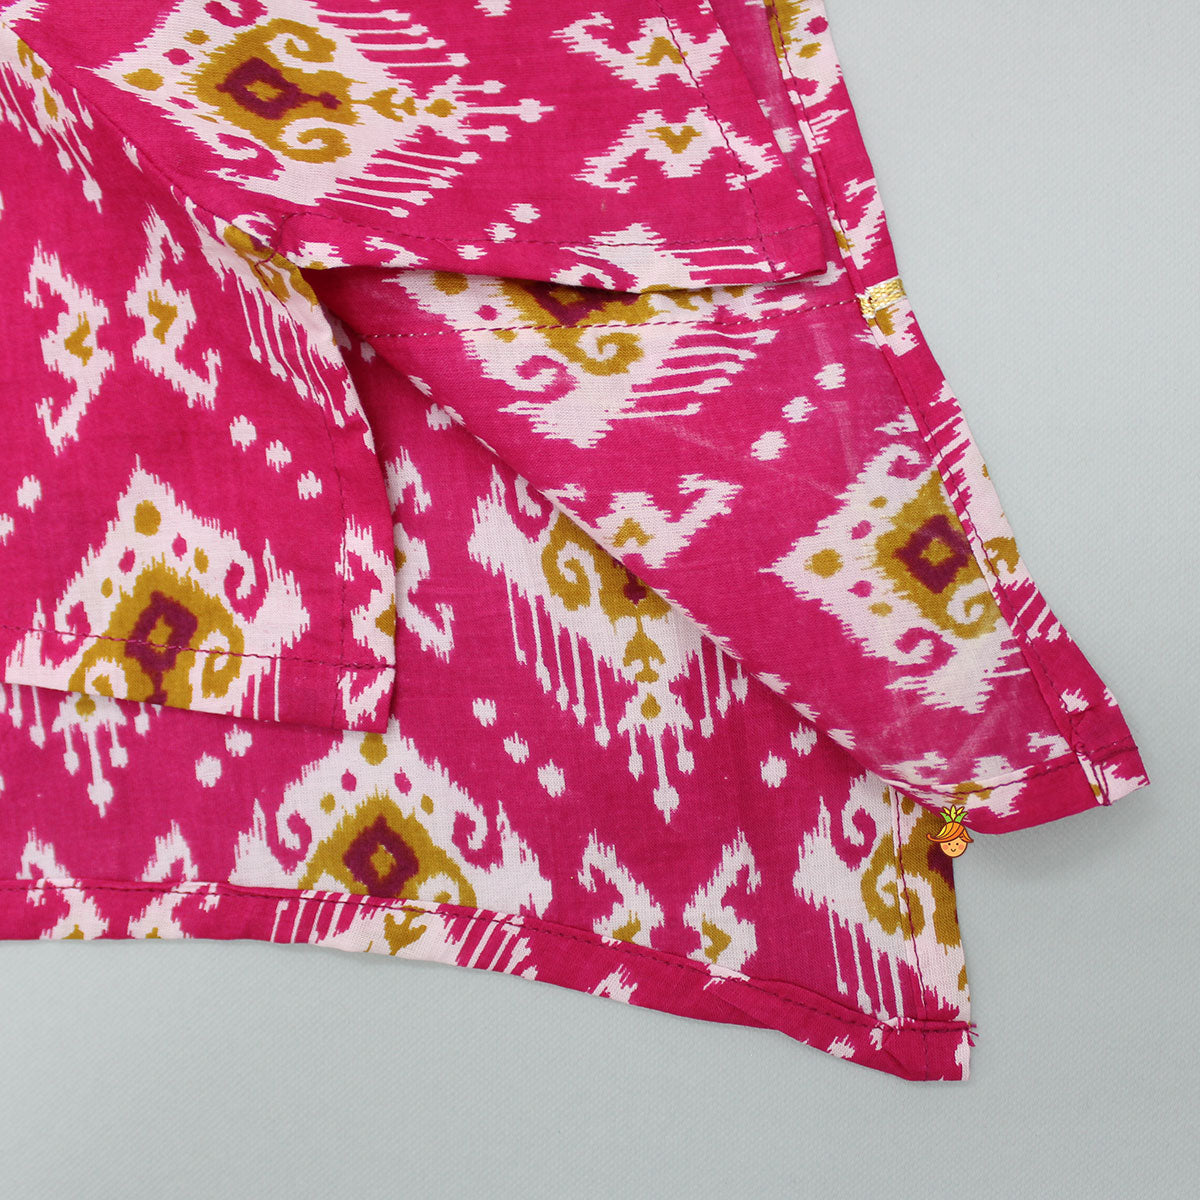 Stylish Ikat Printed Hot Pink Kurti With White Tulip Dhoti